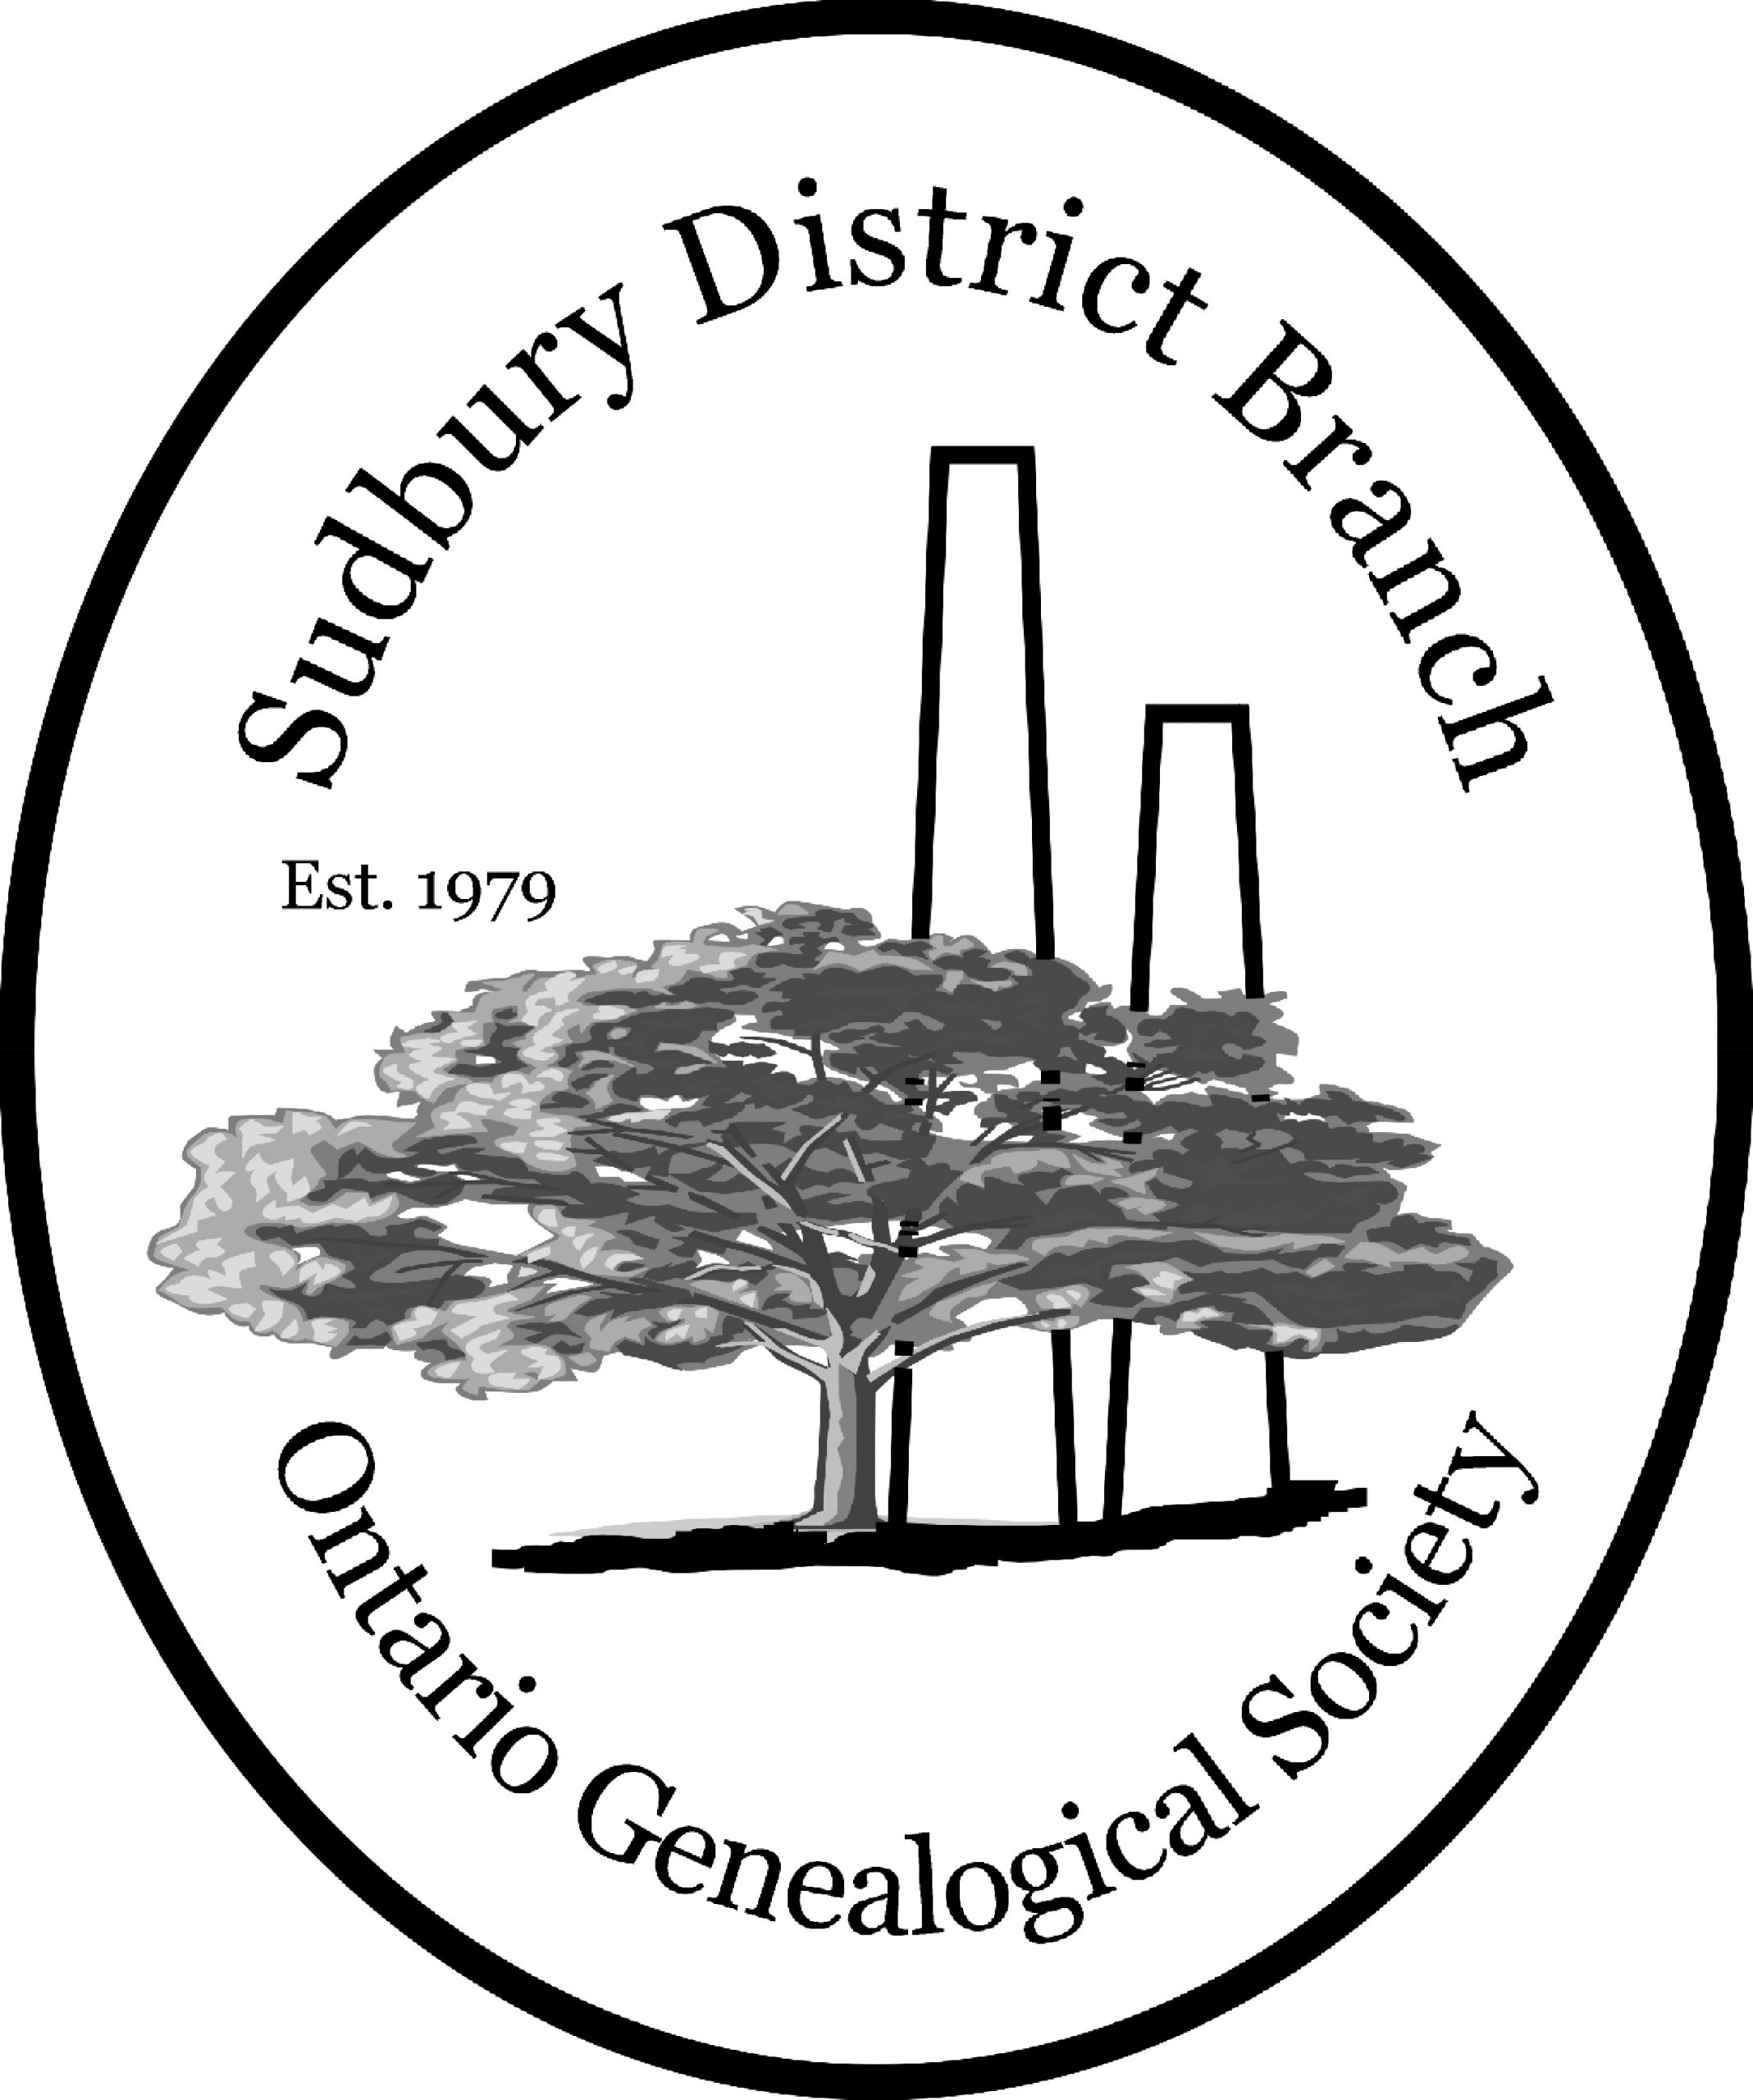 Sudbury Logo